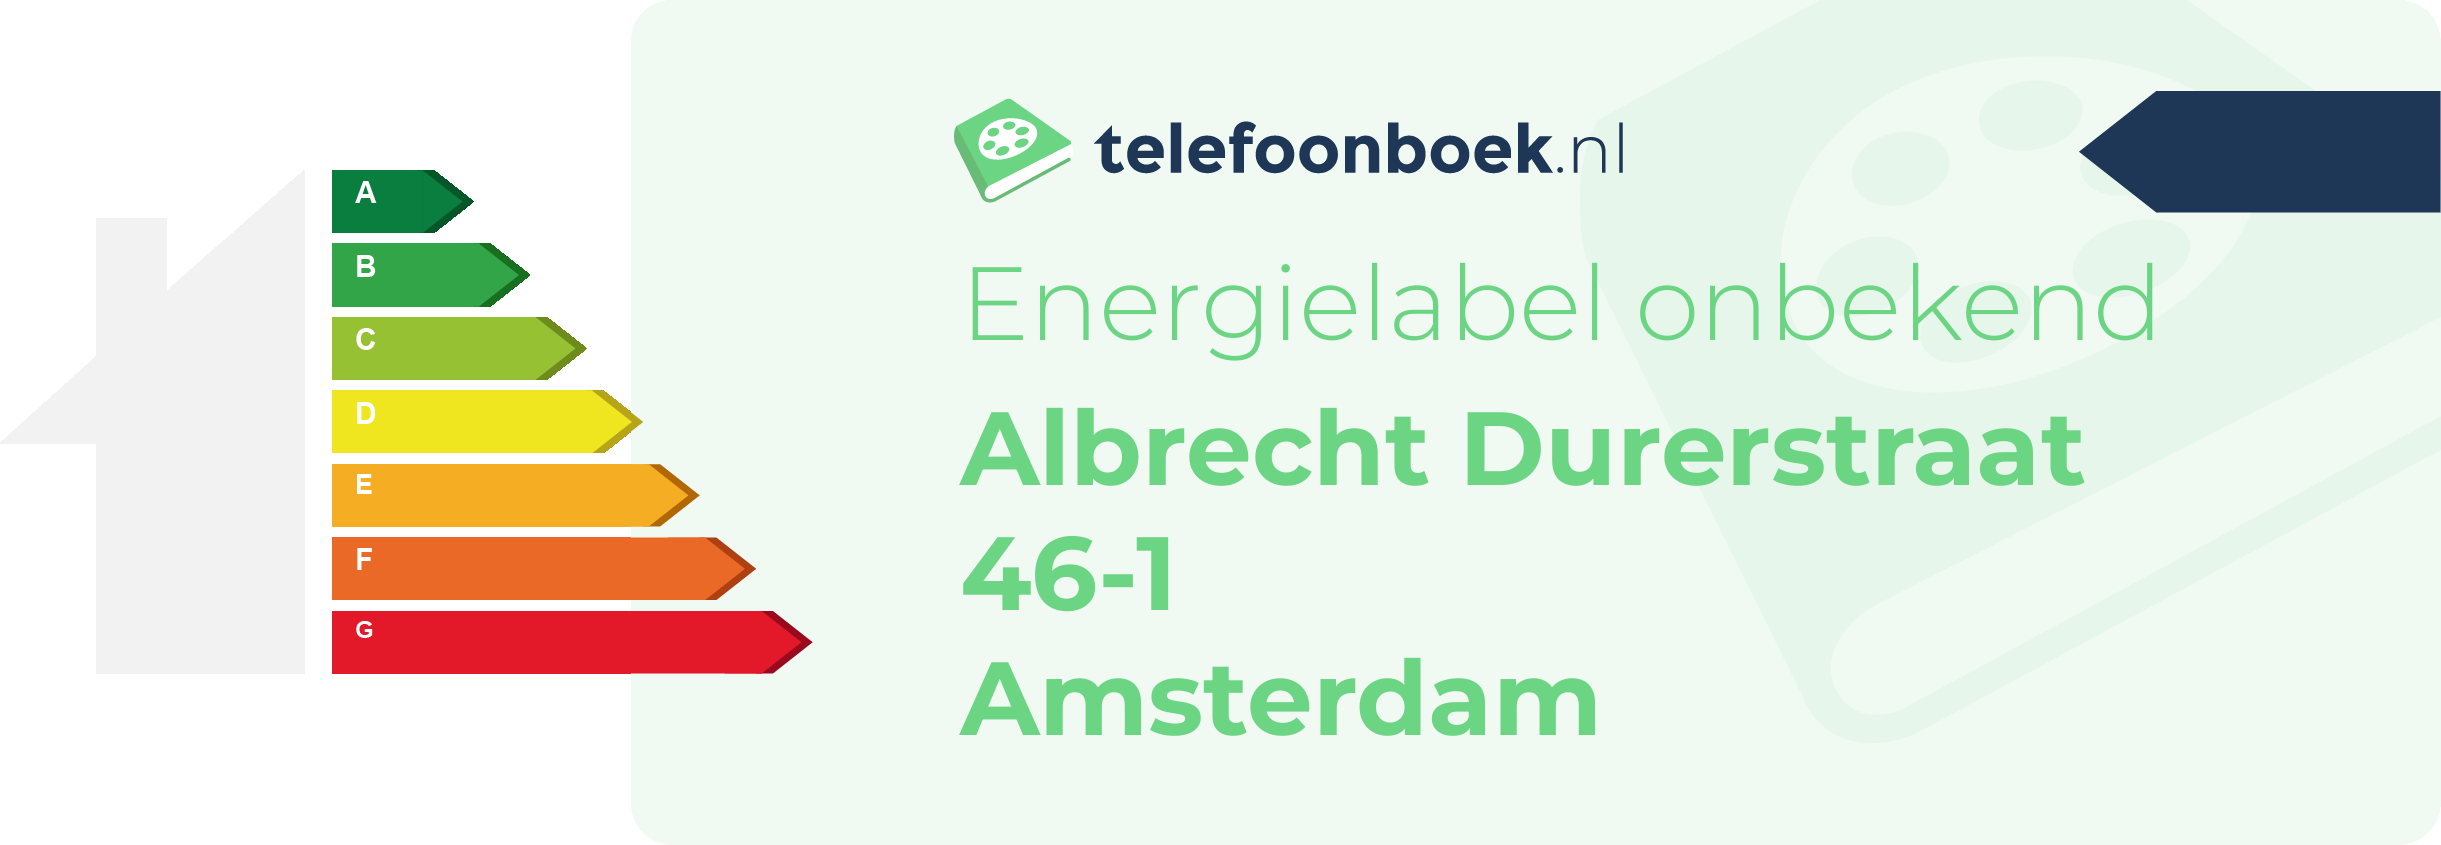 Energielabel Albrecht Durerstraat 46-1 Amsterdam